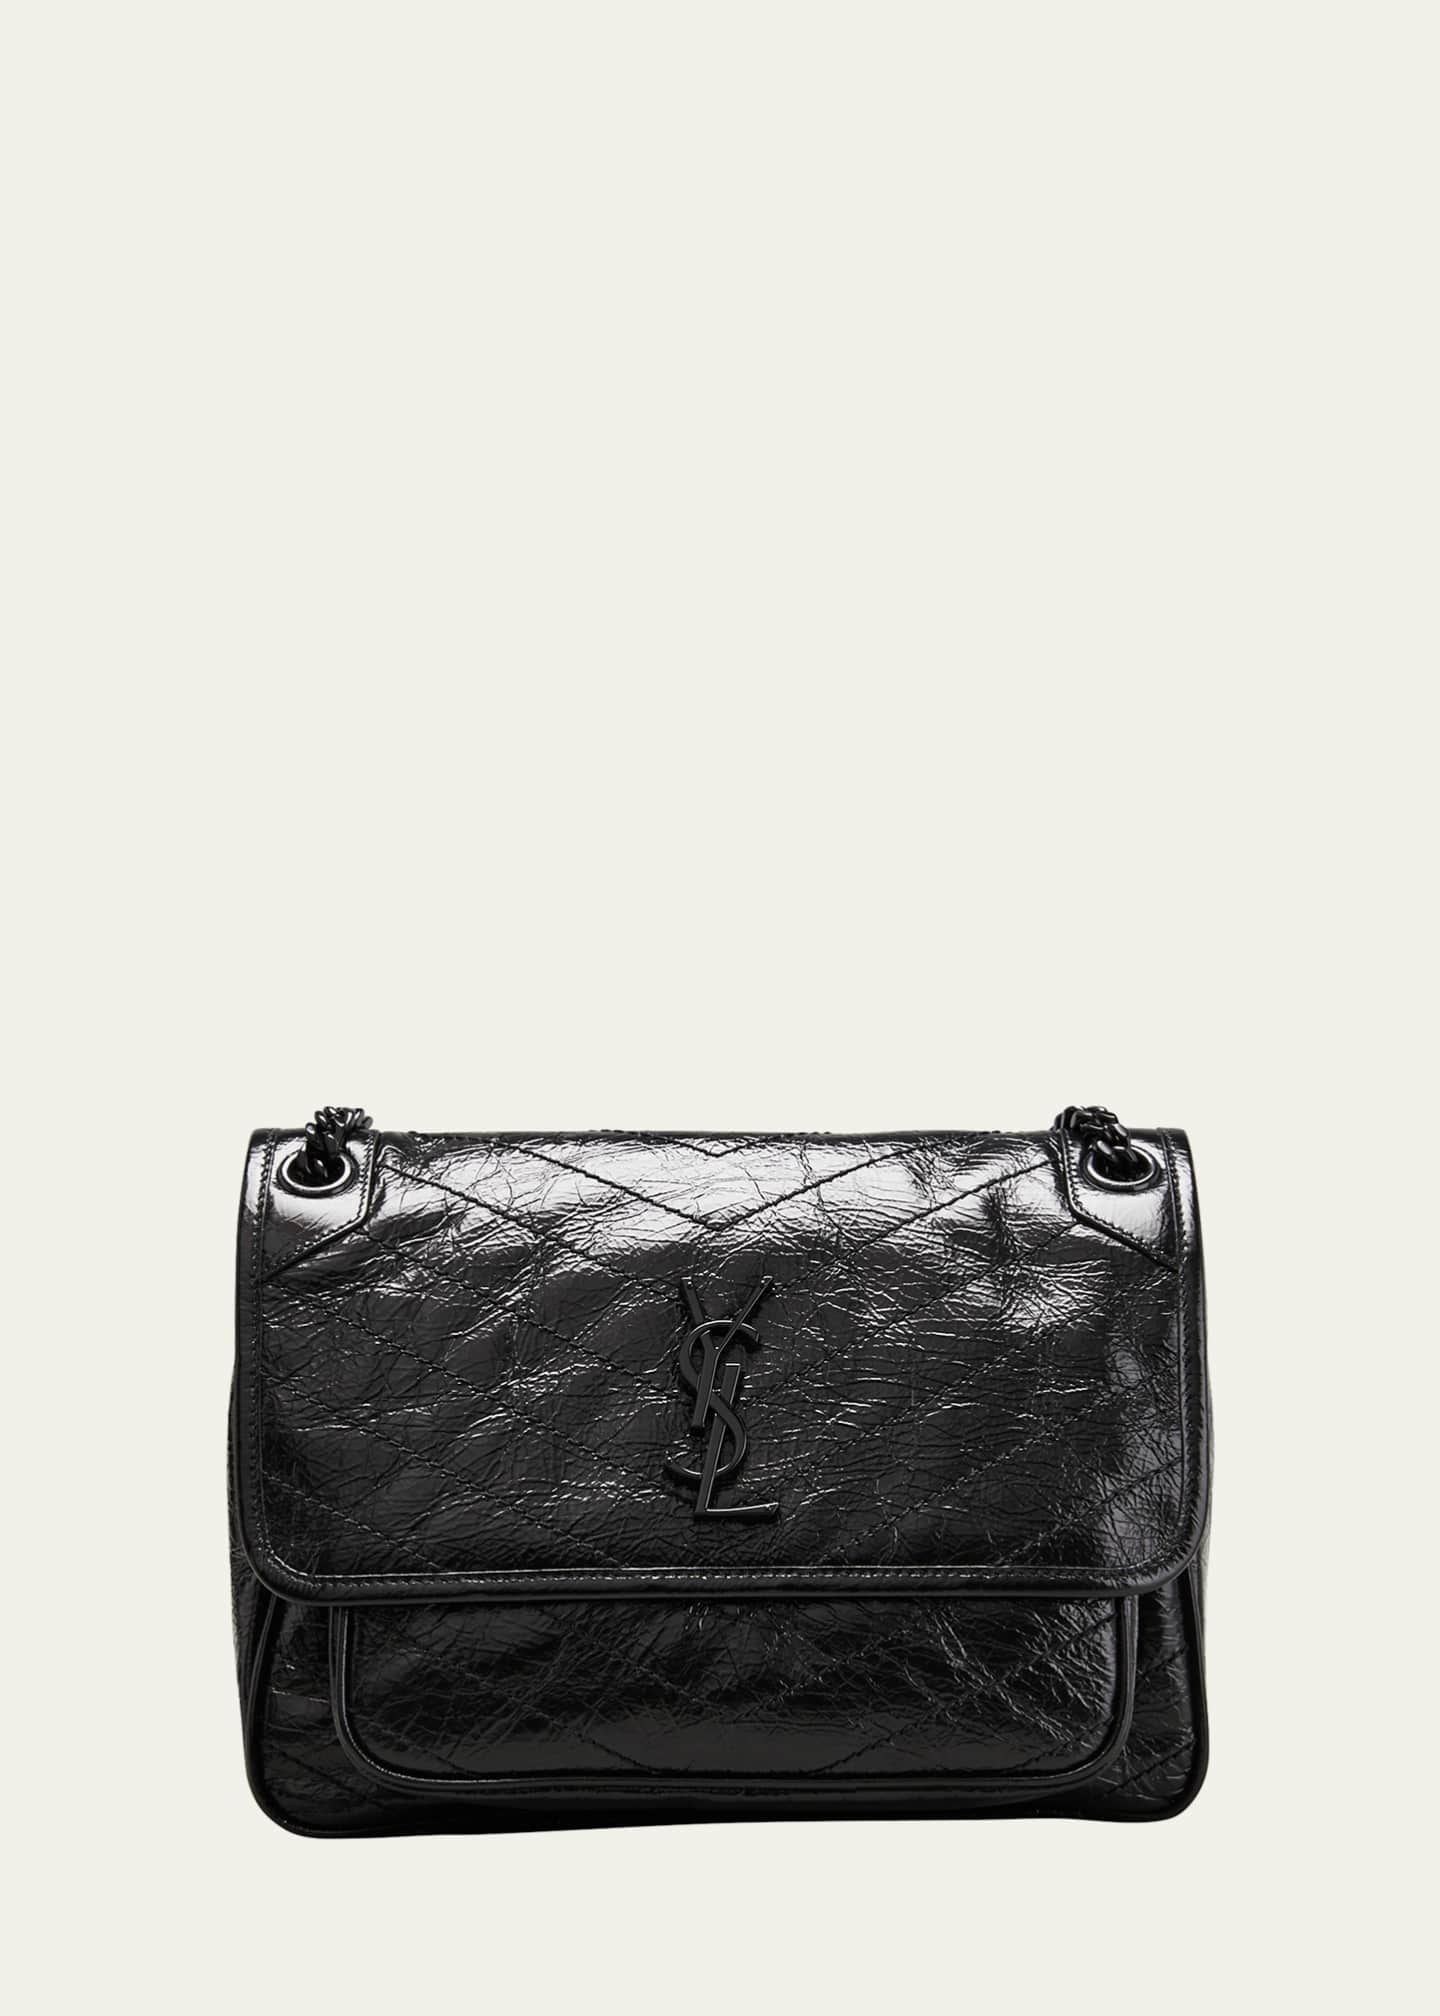 Saint Laurent Niki Medium Flap YSL Shoulder Bag in Crinkled Leather Image 1 of 5